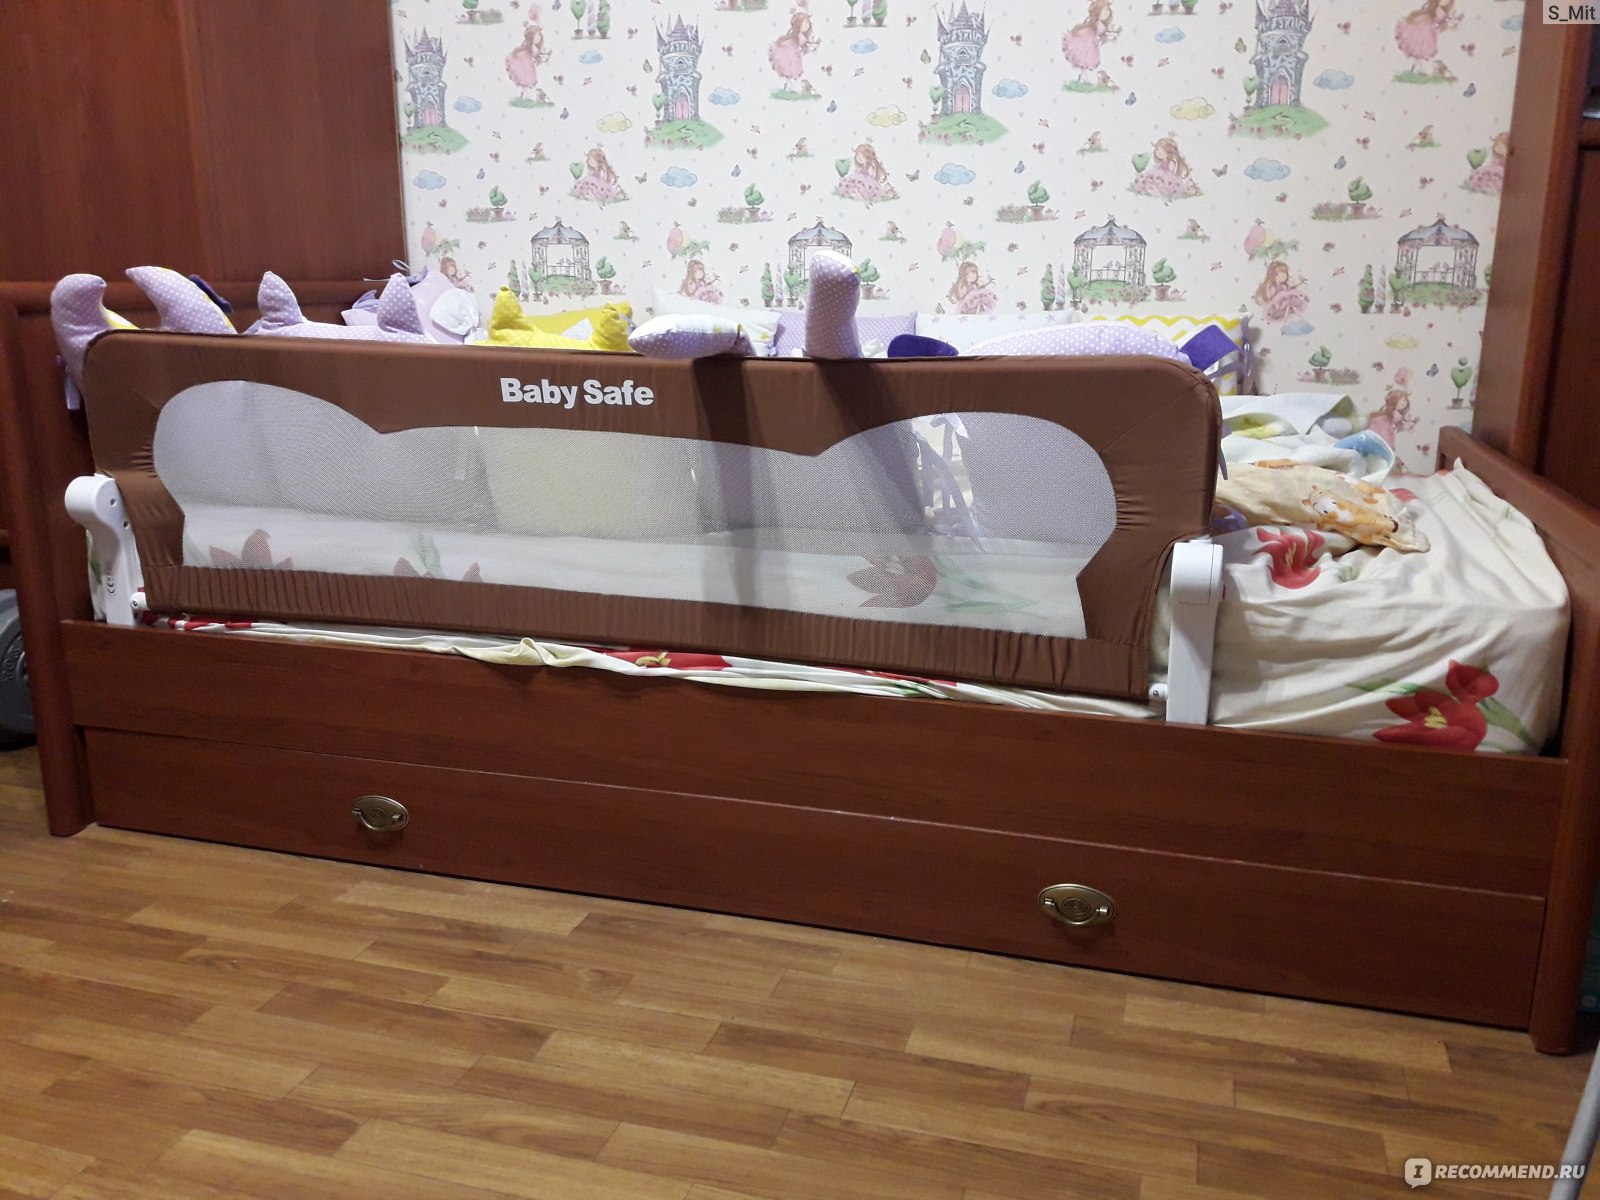 Как обезопасить кровать от падения ребенка